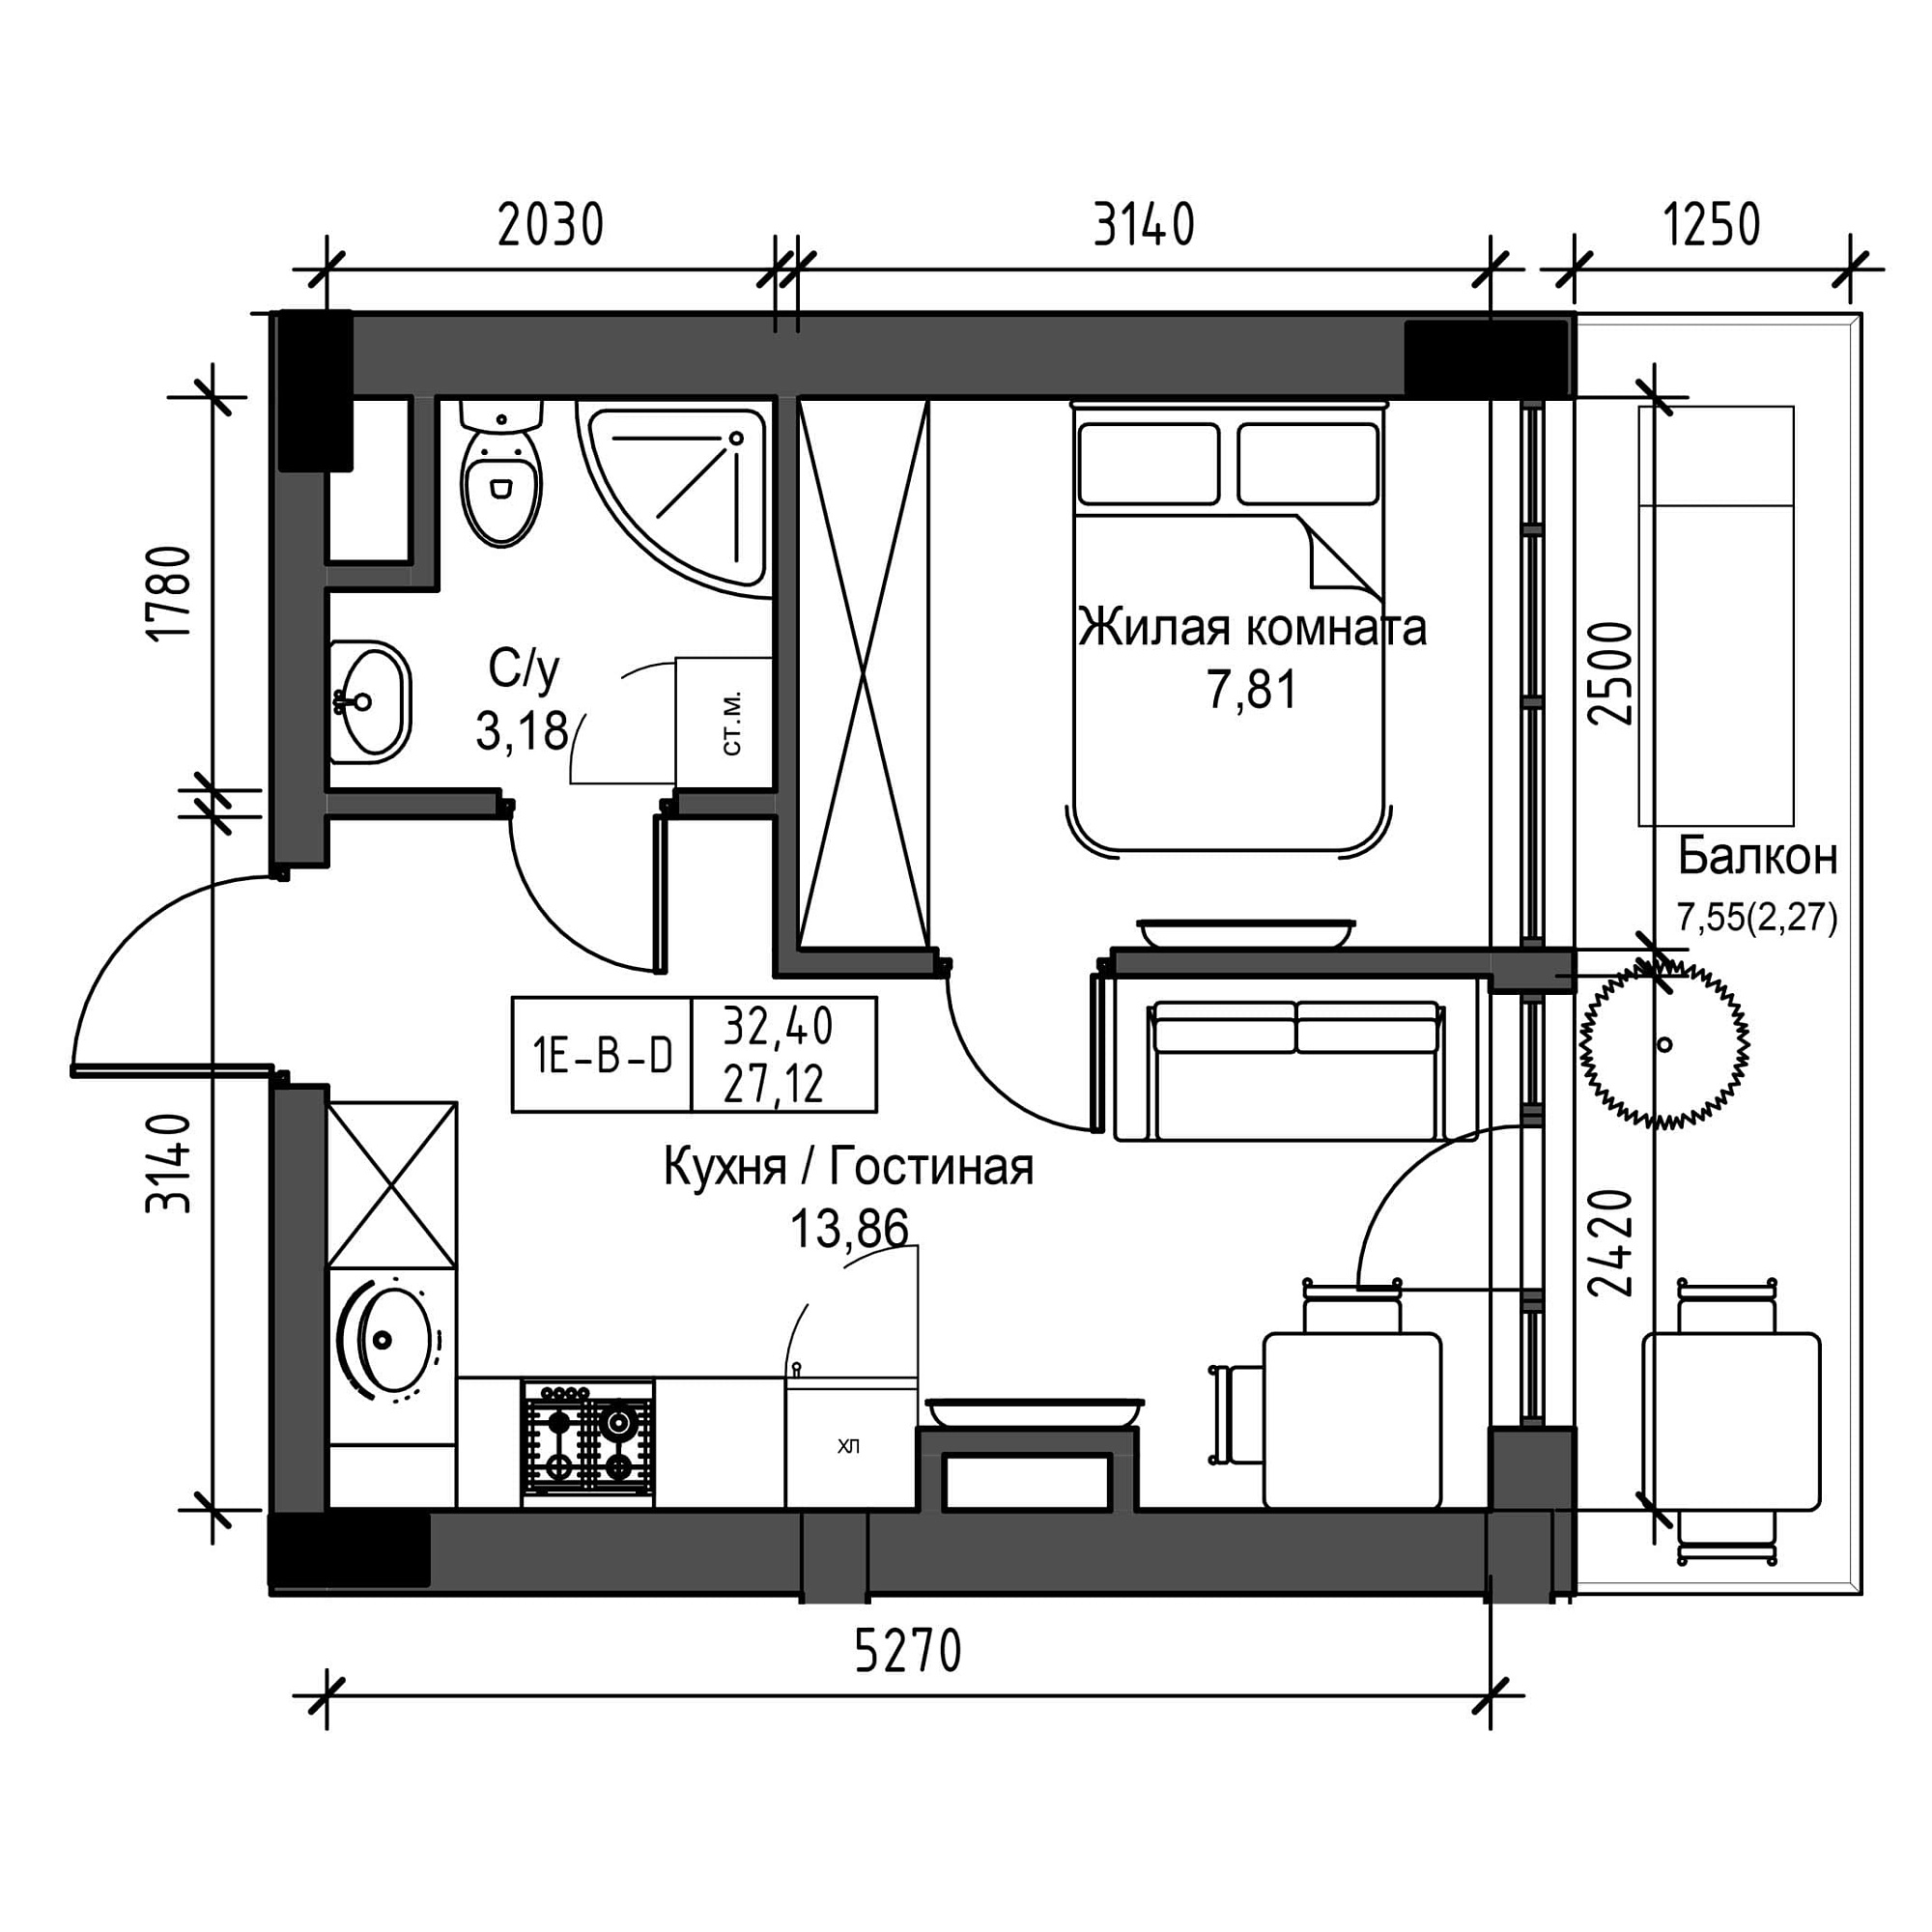 Планировка 1-к квартира площей 27.12м2, UM-001-09/0003.